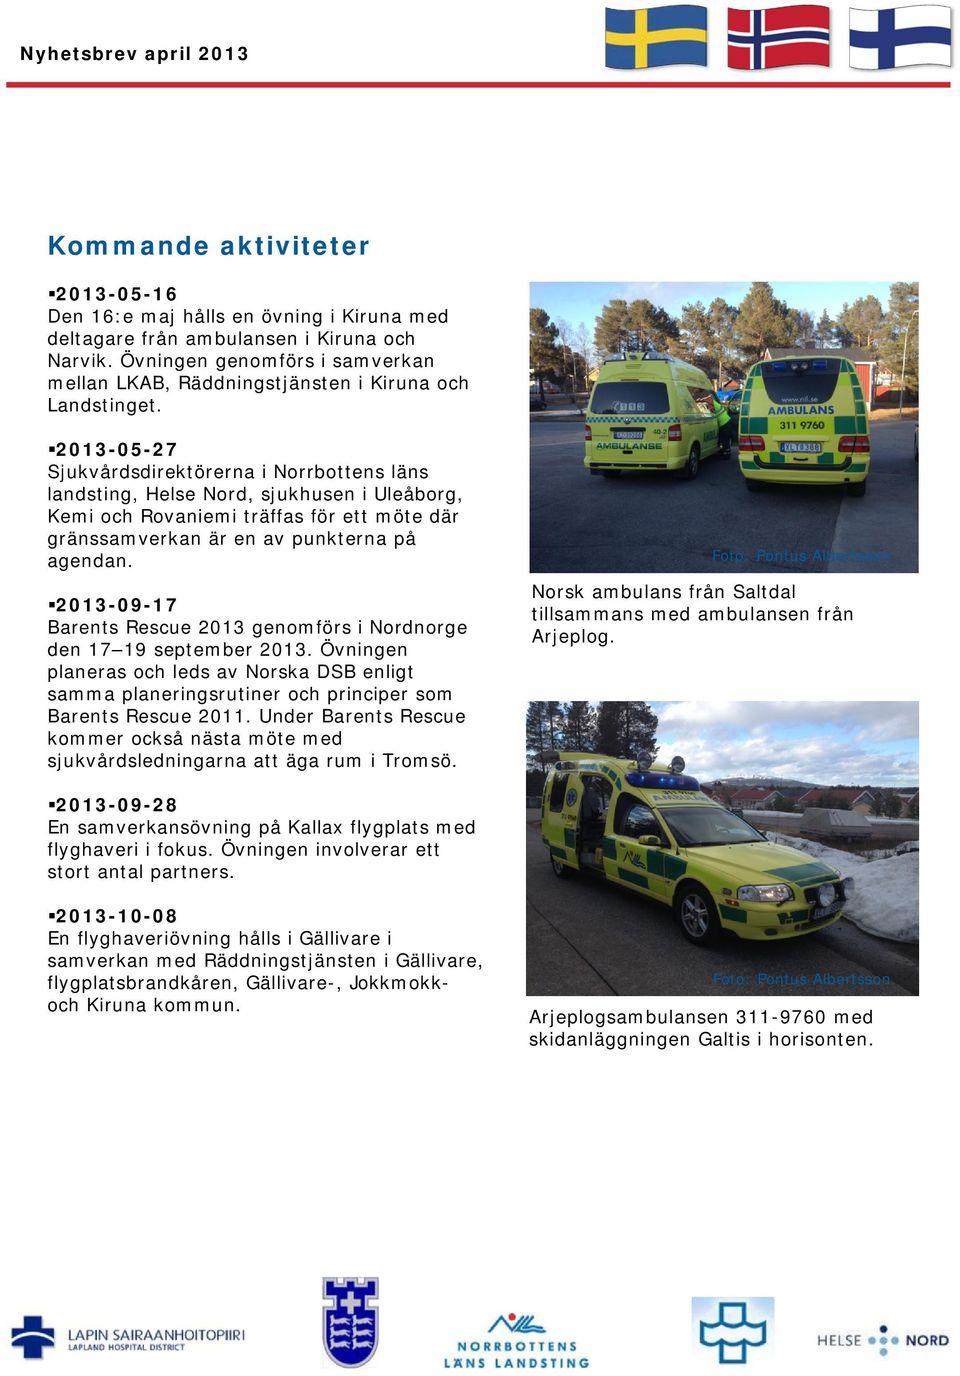 2013-05-27 Sjukvårdsdirektörerna i Norrbottens läns landsting, Helse Nord, sjukhusen i Uleåborg, Kemi och Rovaniemi träffas för ett möte där gränssamverkan är en av punkterna på agendan.